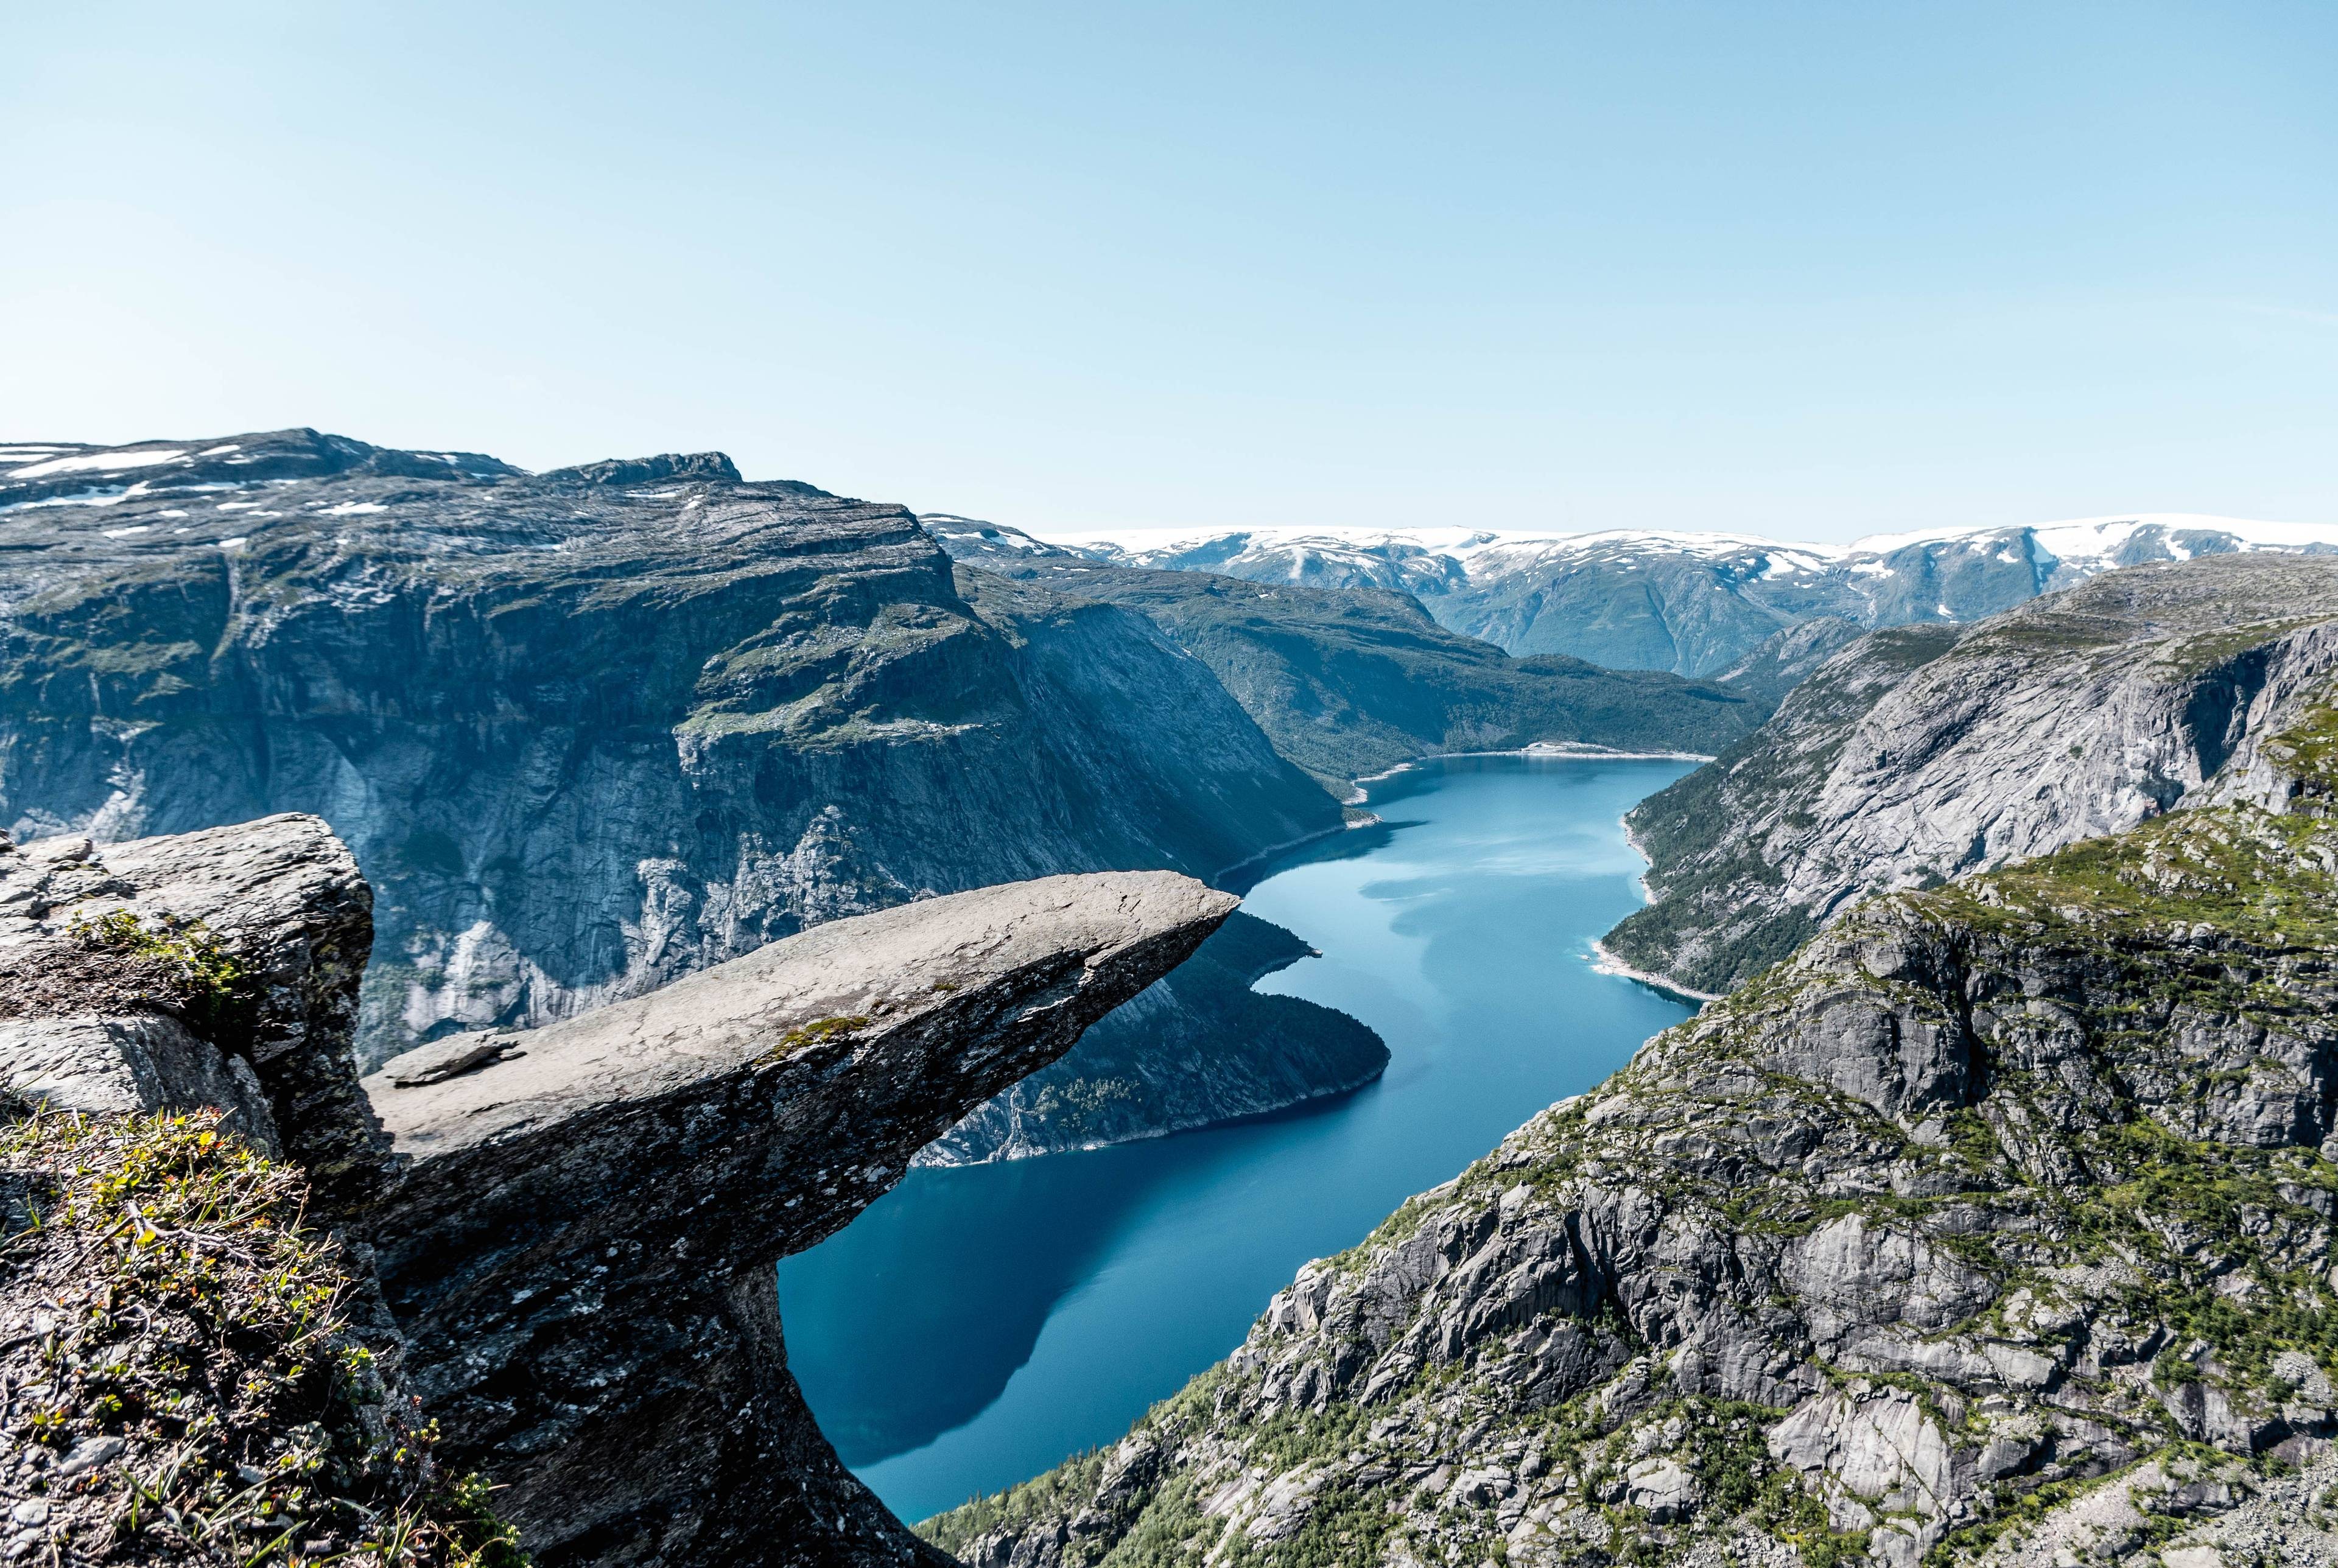 Estar en la cima del mundo: Viaje de fin de semana de Bergen a Trolltunga